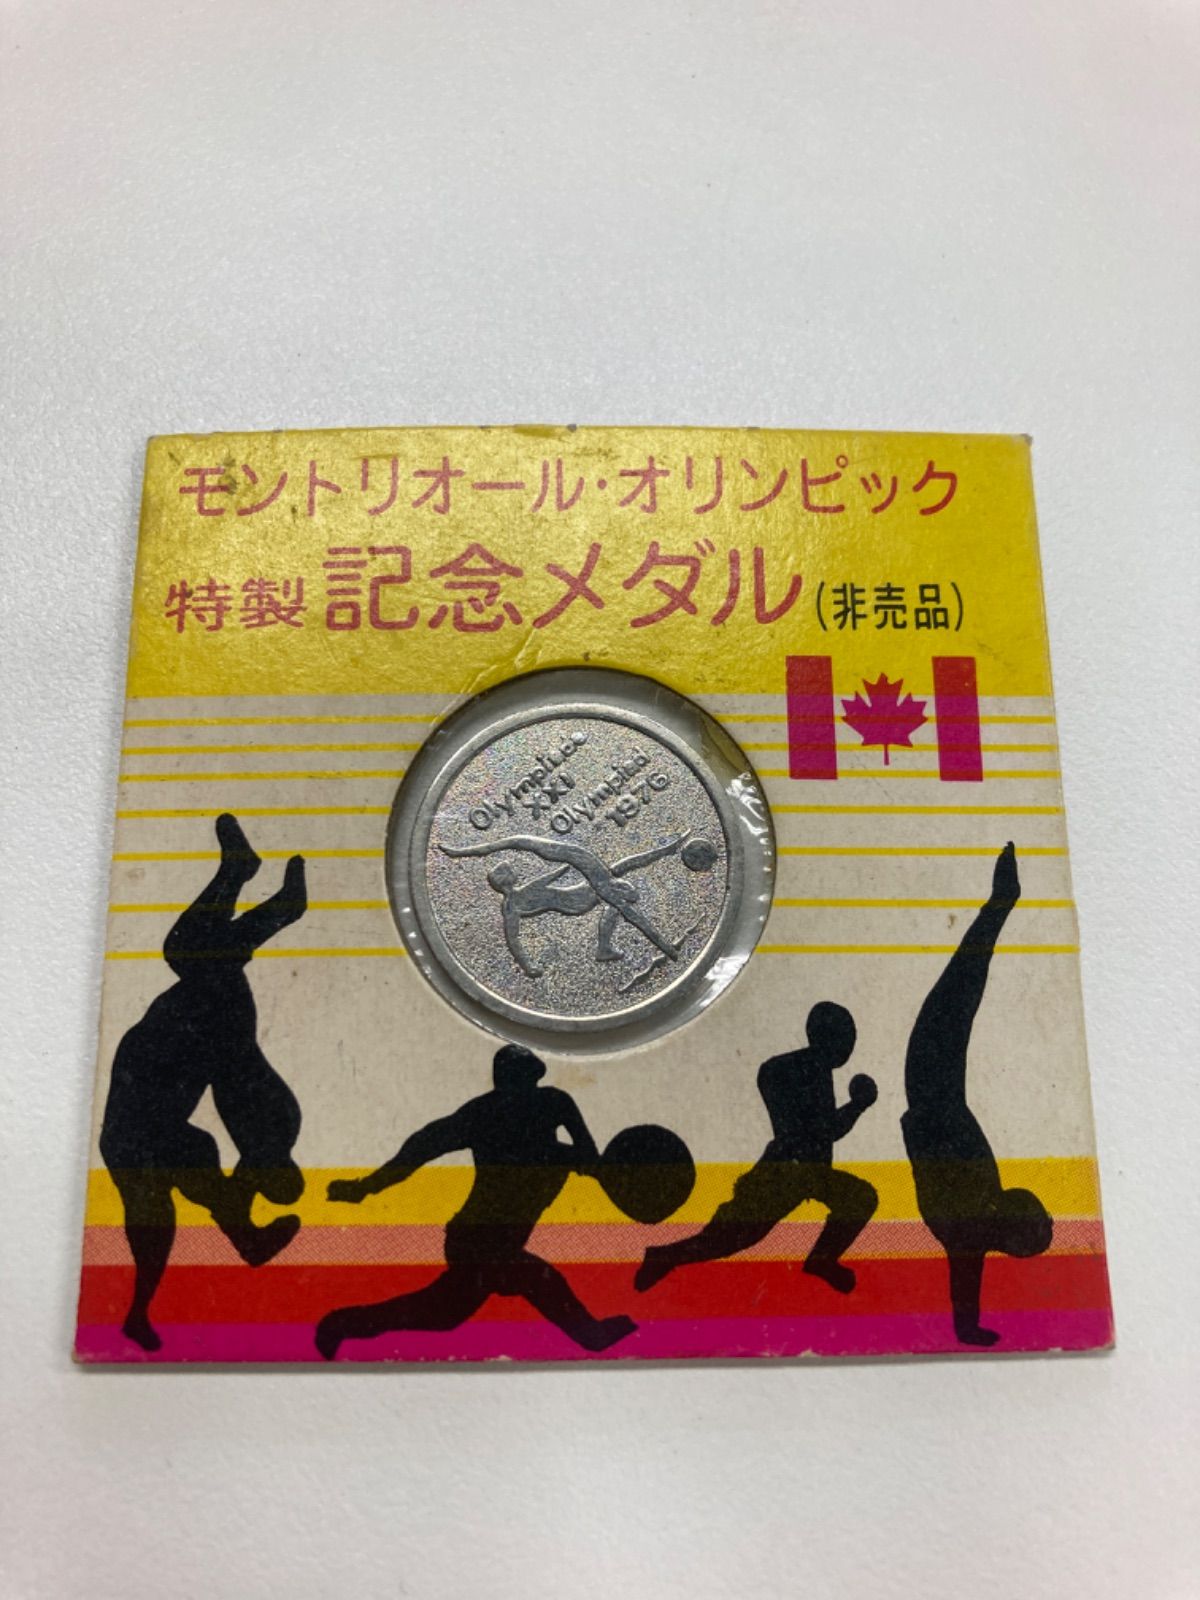 非売品 モントリオールオリンピック特製記念メダル www.ch4x4.com